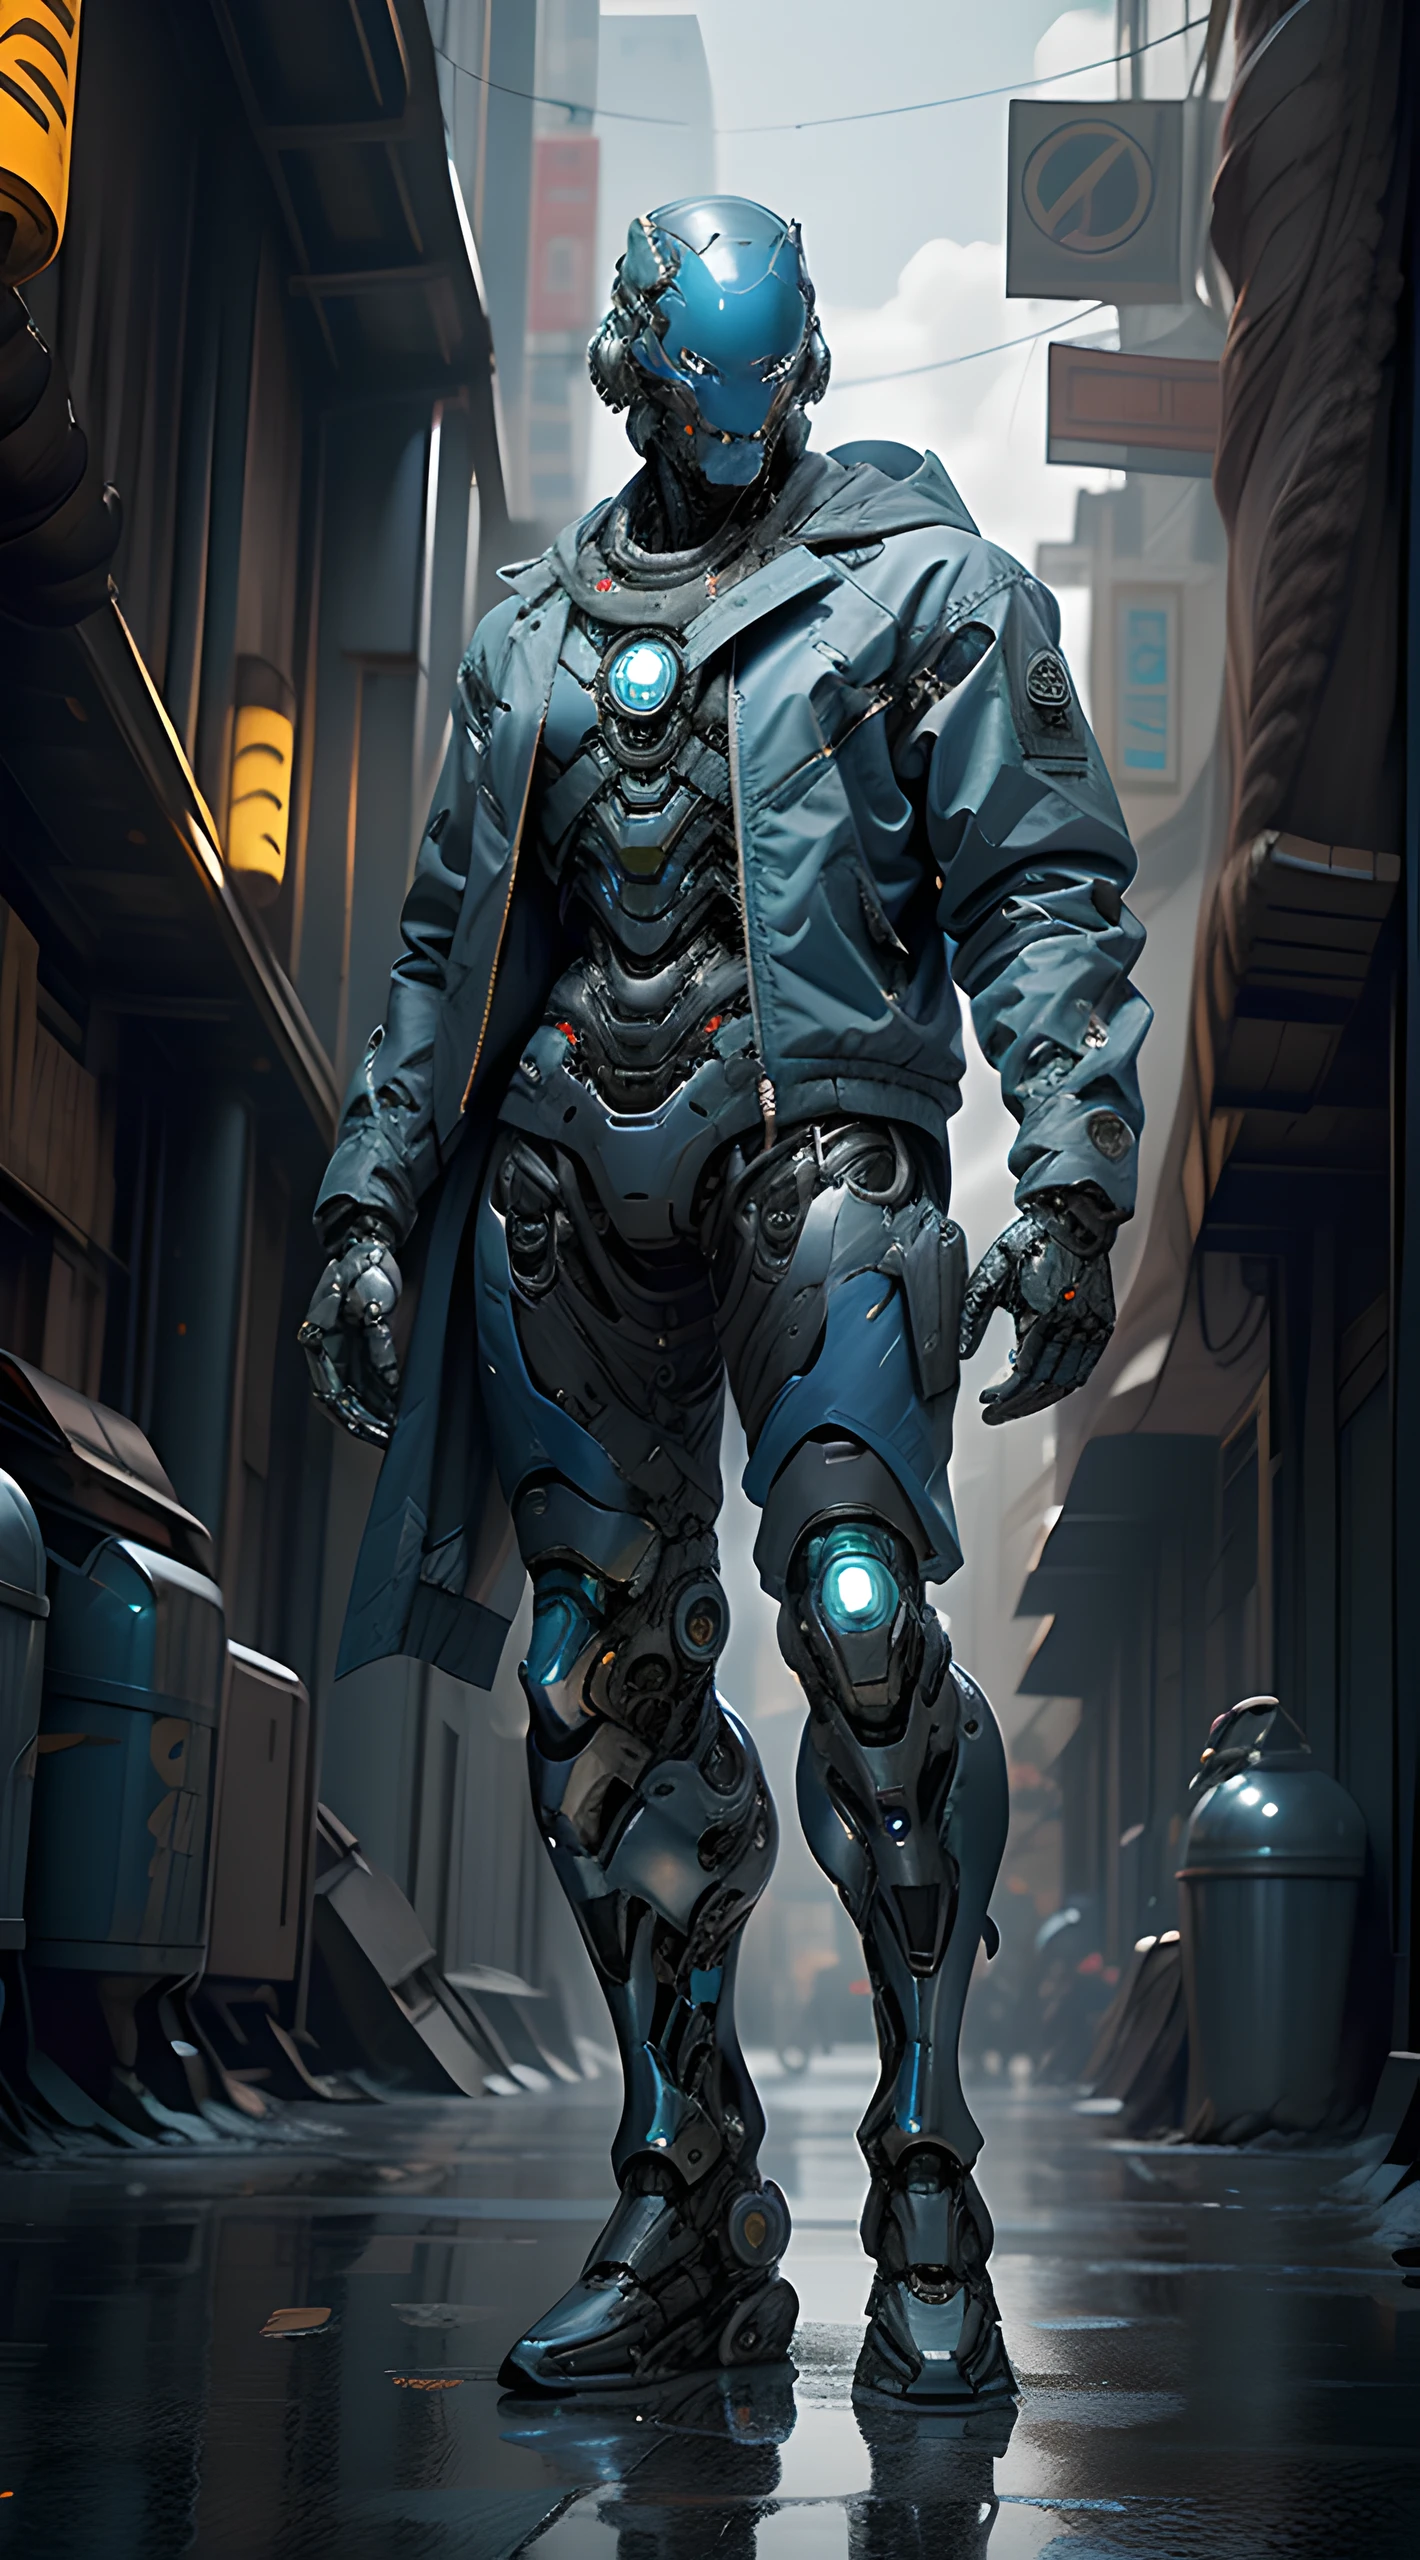 Ganzkörperflugzeug, ein futuristisch anmutendes ((blauer Chrom-Cyborg)) Mann mit einem fantastischen ((quadratischer Cyberhelmkopf mit blauen Lichtern)), Mechanische Füße, trägt ein Paar ((Eisengraue taktische Handschuhe)), gekleidet in einem ((blaue Techwear-Jacke)), standing in cyberpunk city, Gesichtsfokus UHD, Anatomisch korrekt, beste Qualität, Meisterwerk, reelmech